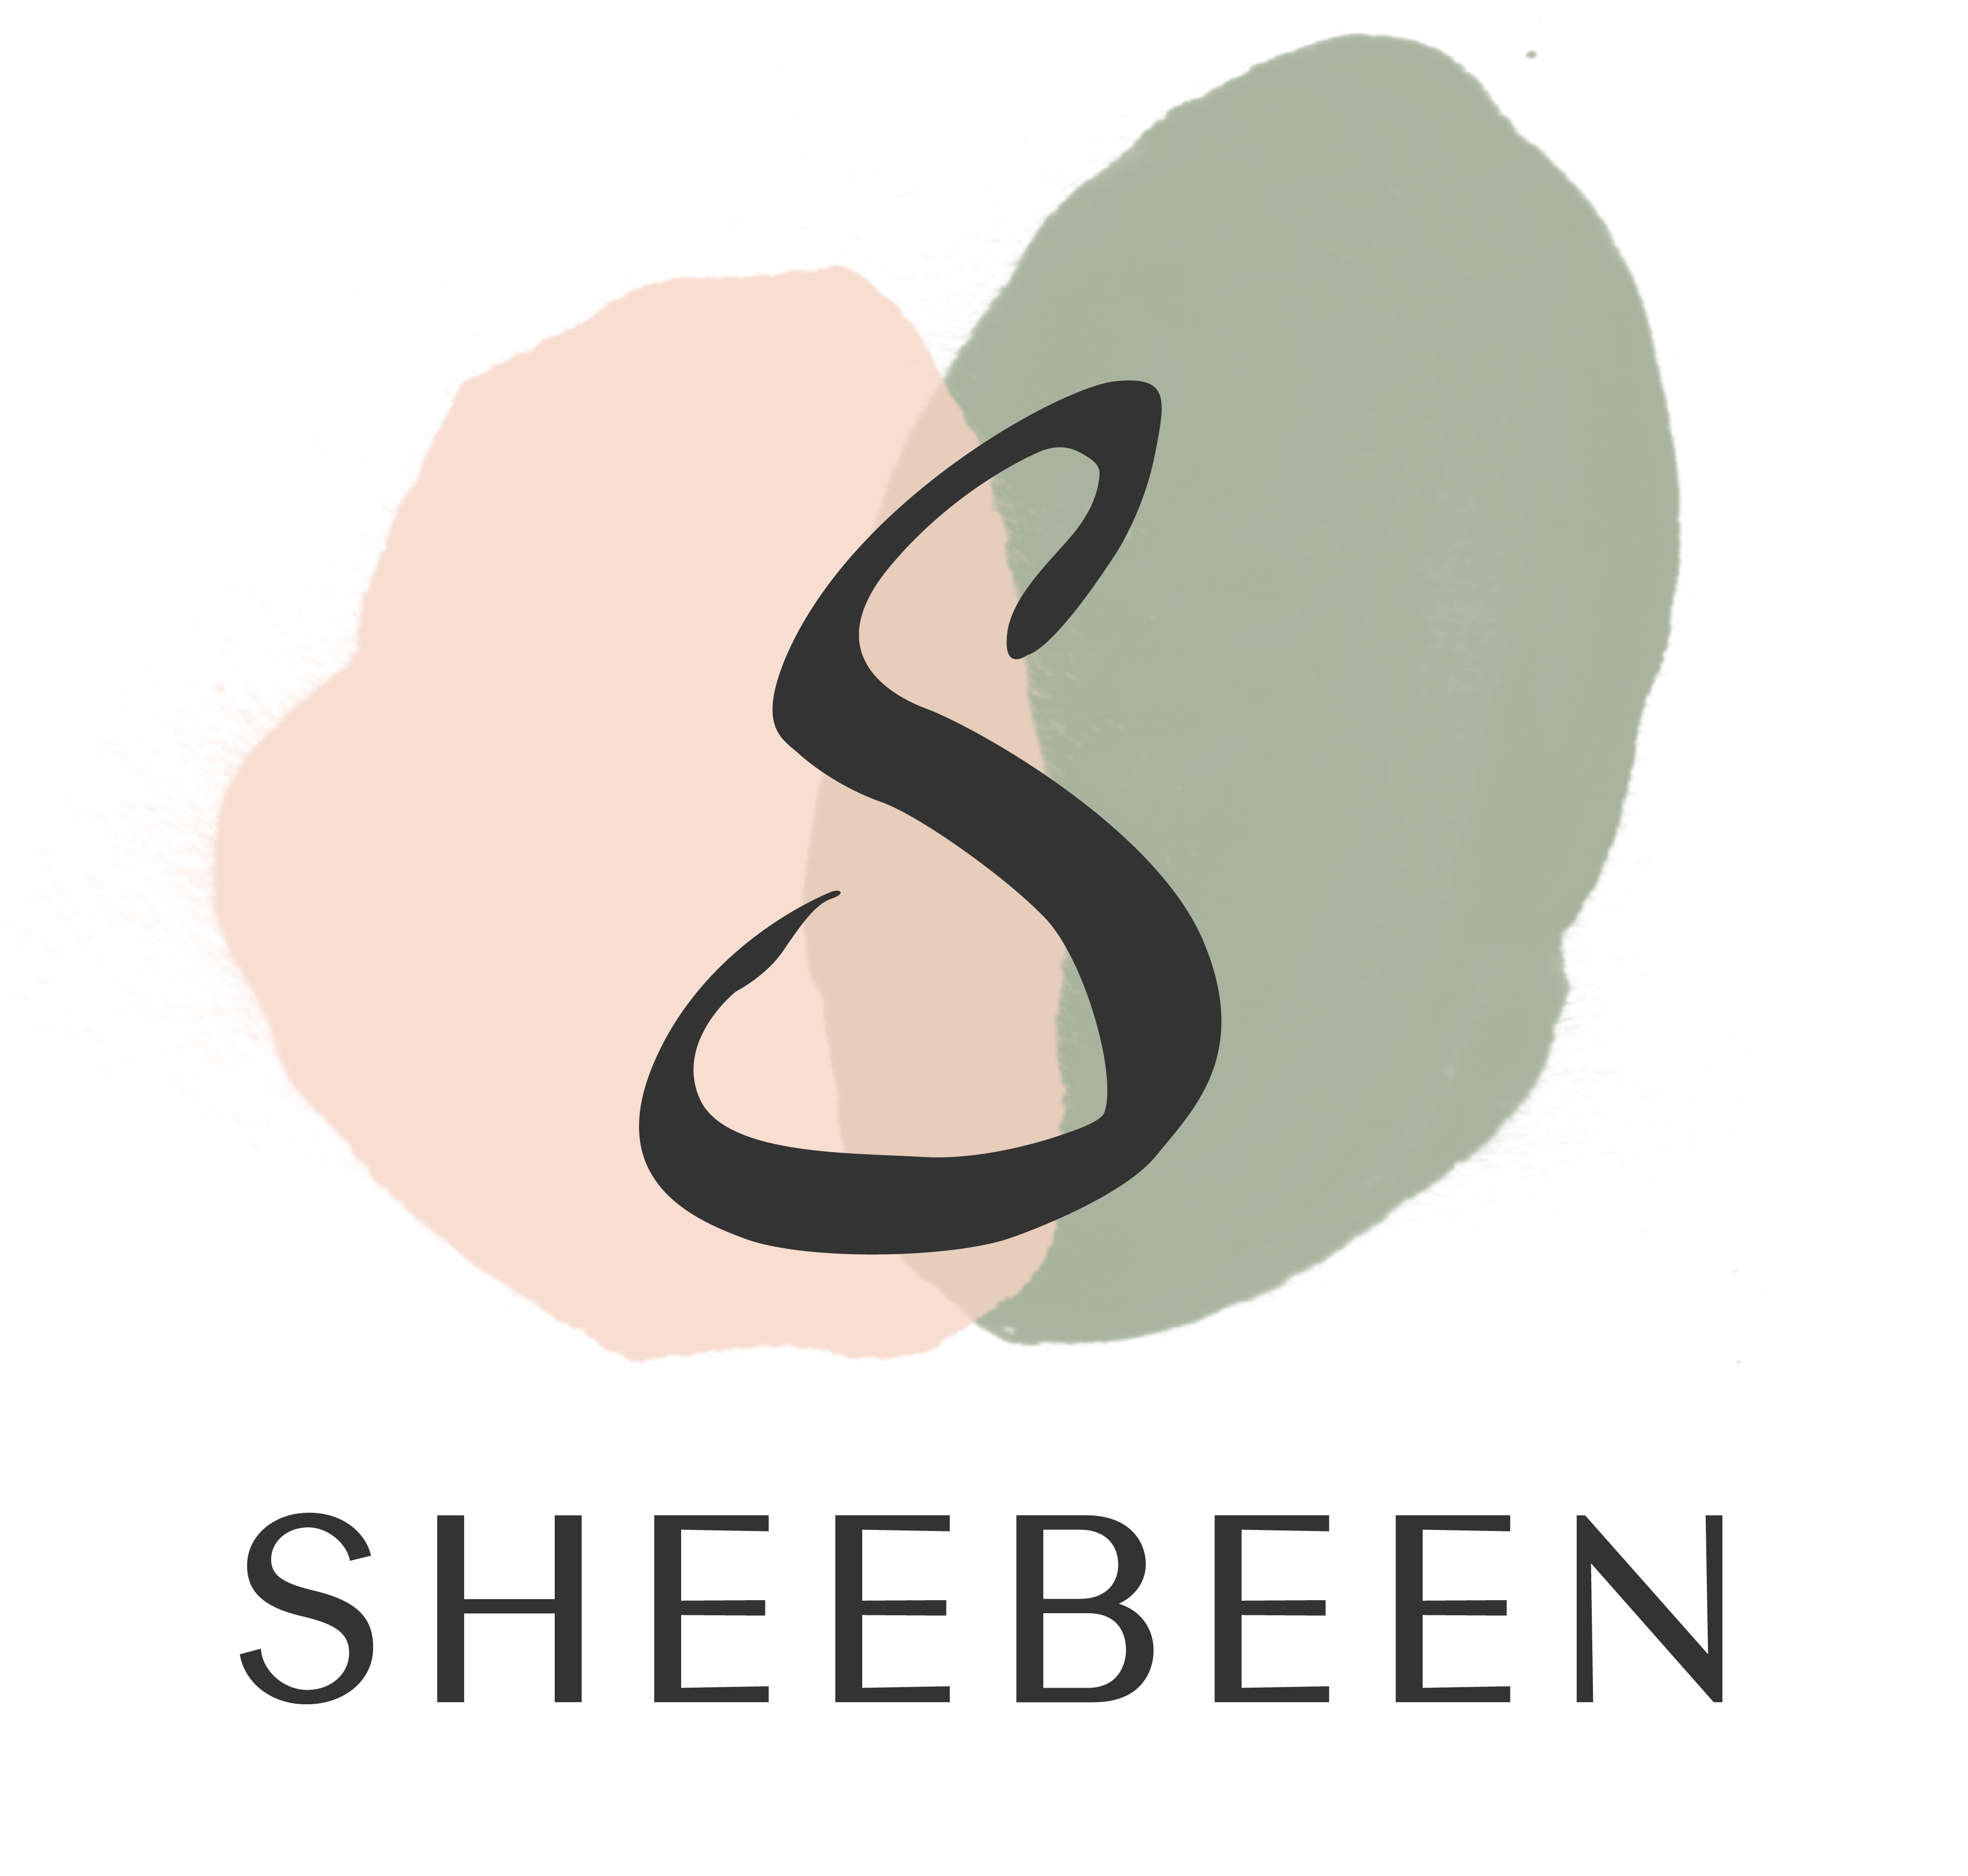 Sheebeen